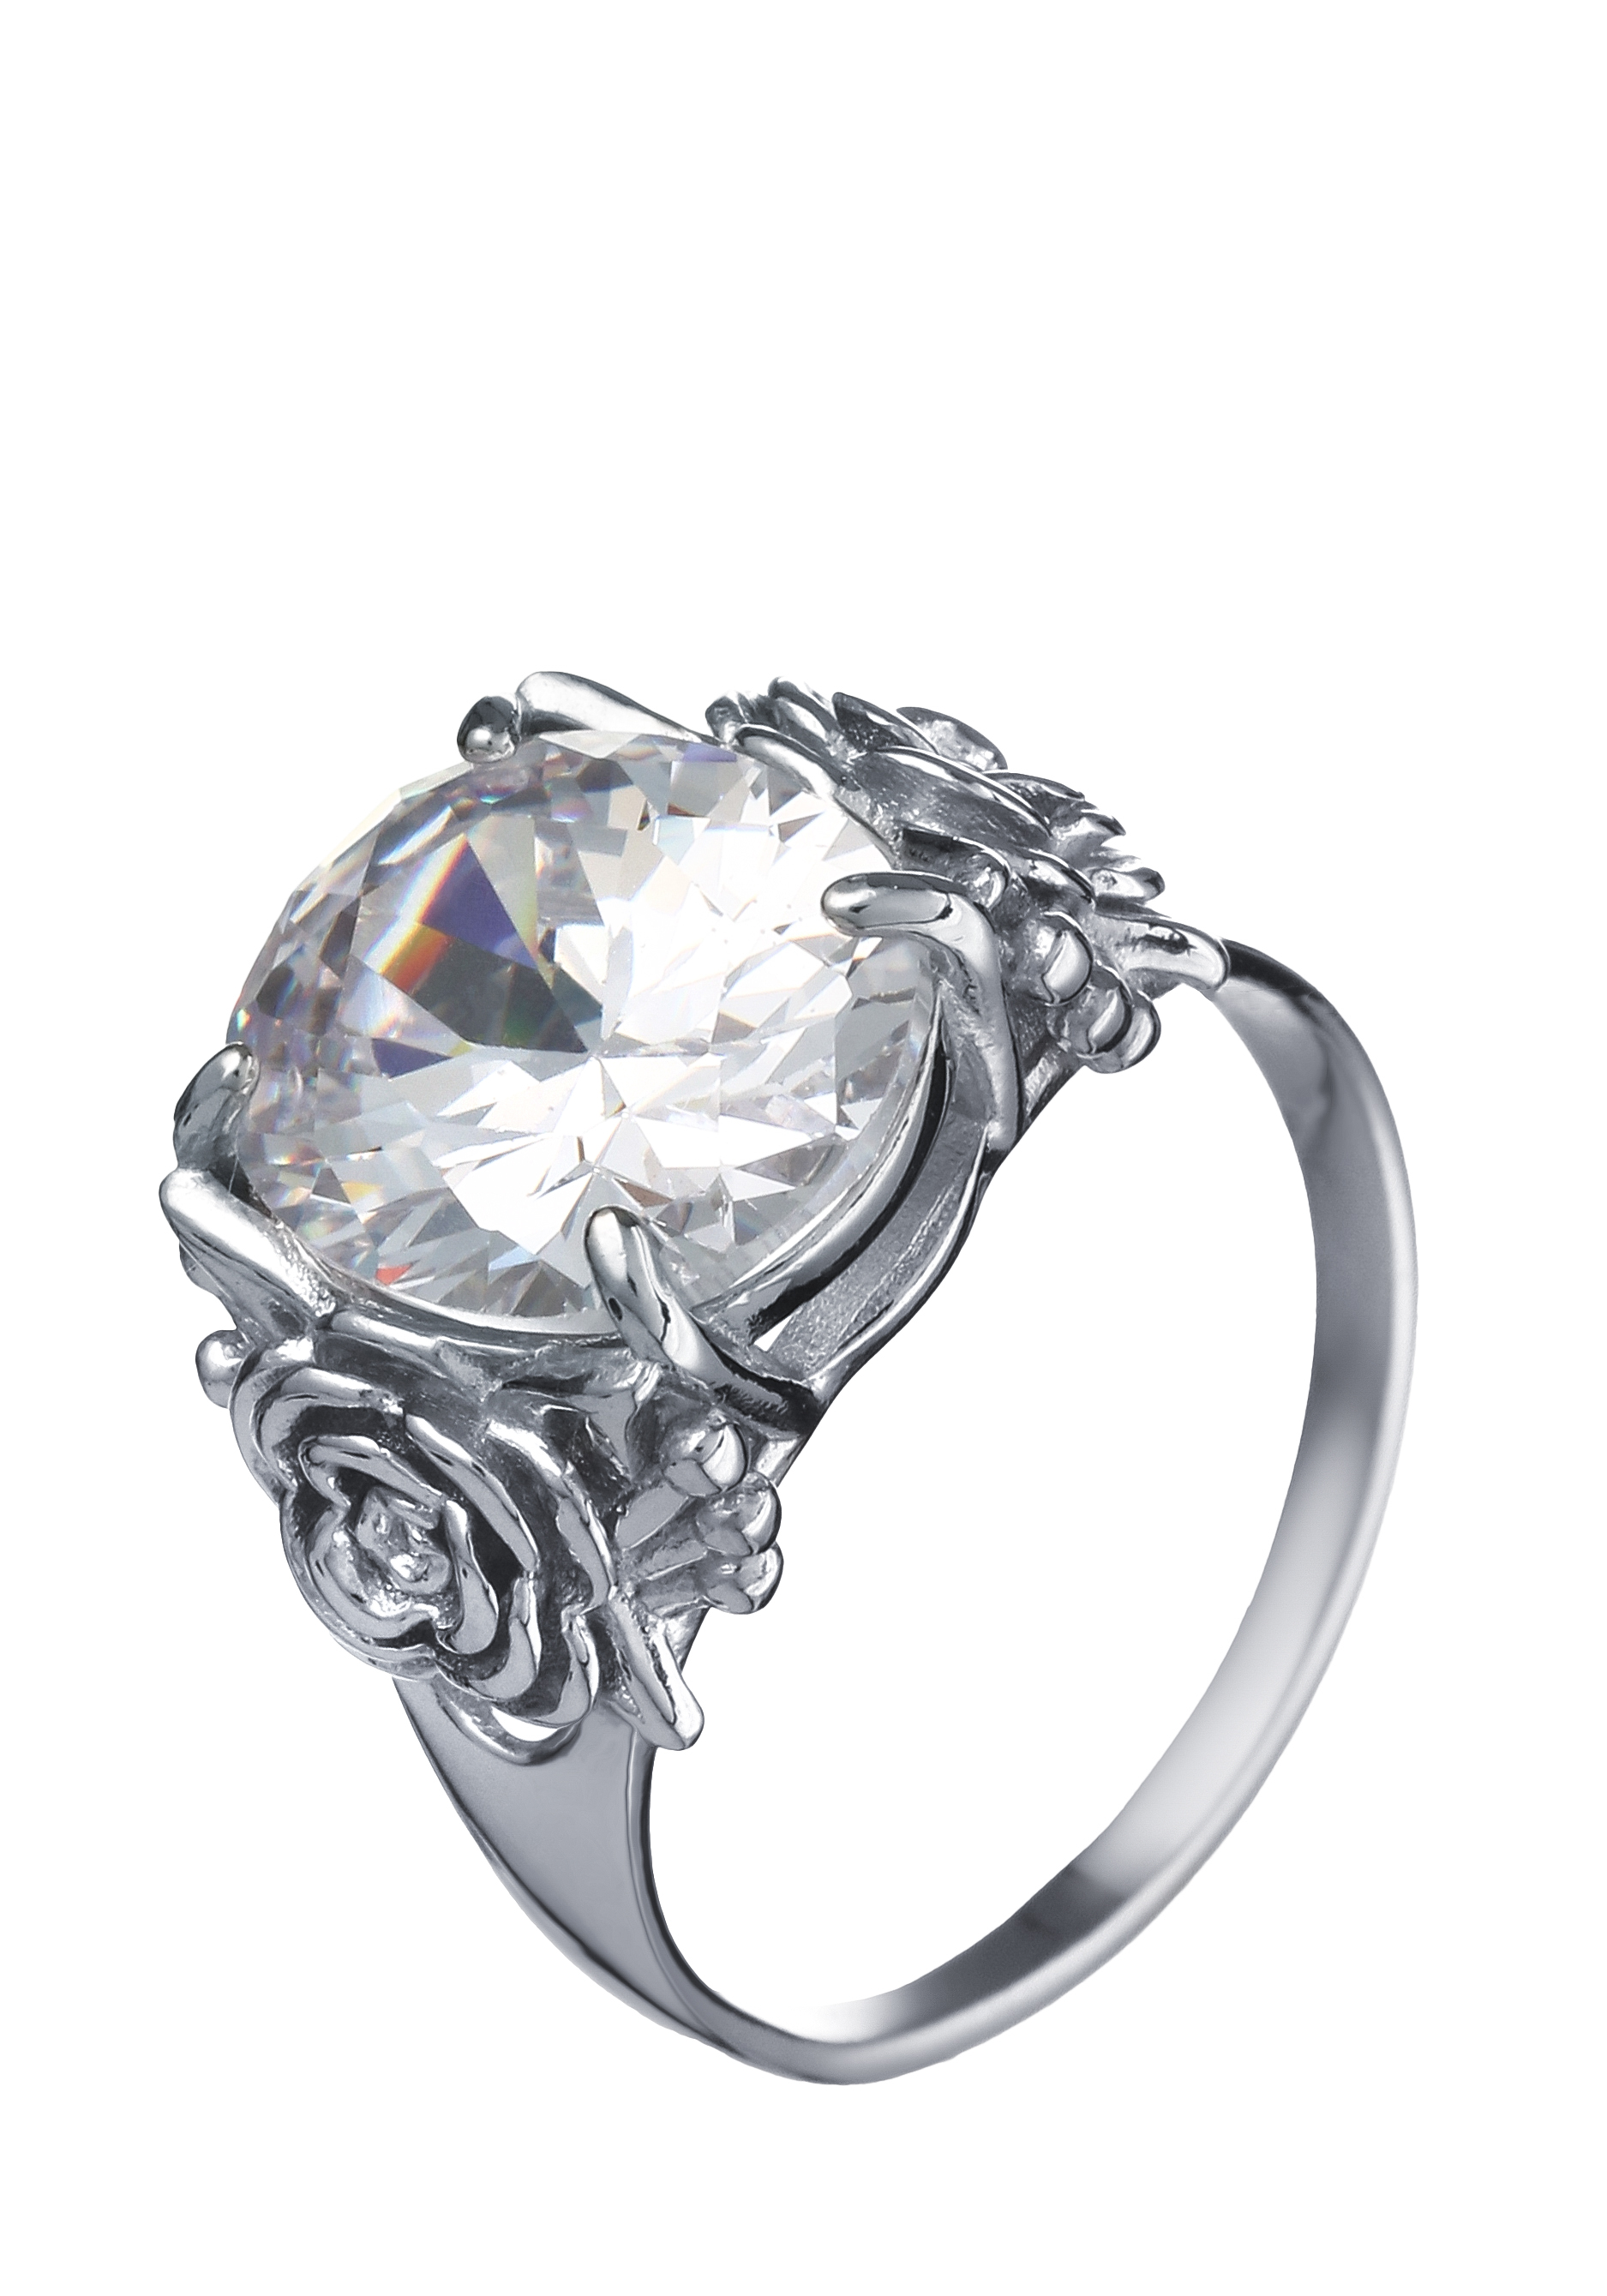 Кольцо серебряное "Изобилие чувств" Приволжский ювелир, цвет серый, размер 19 перстень - фото 1